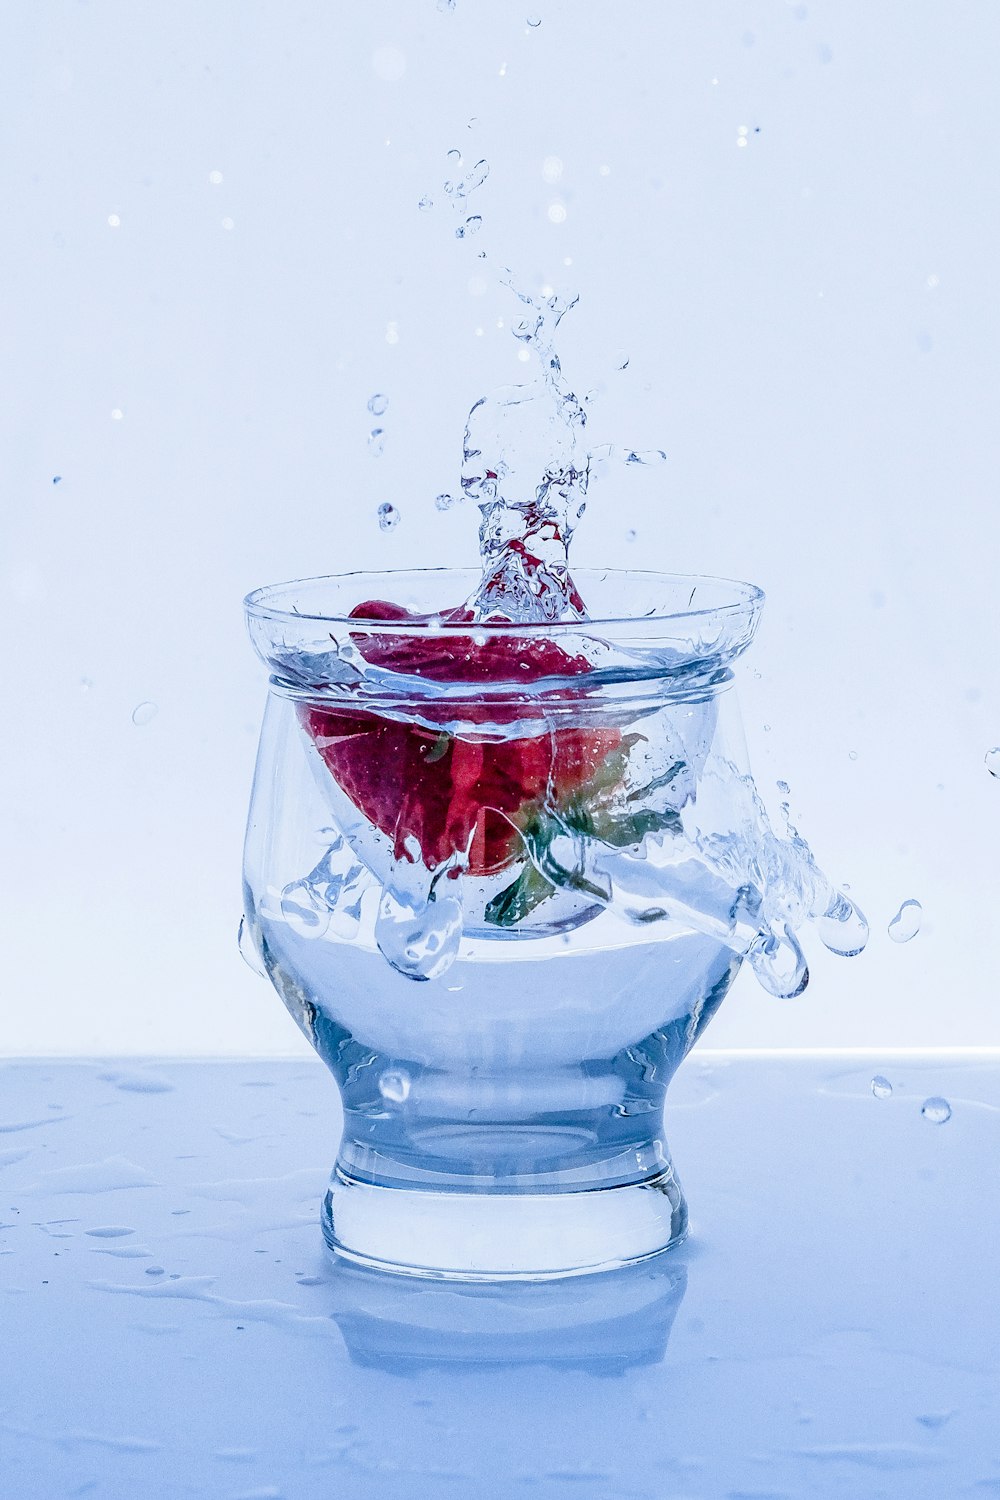 rose rouge dans l’eau avec de l’eau